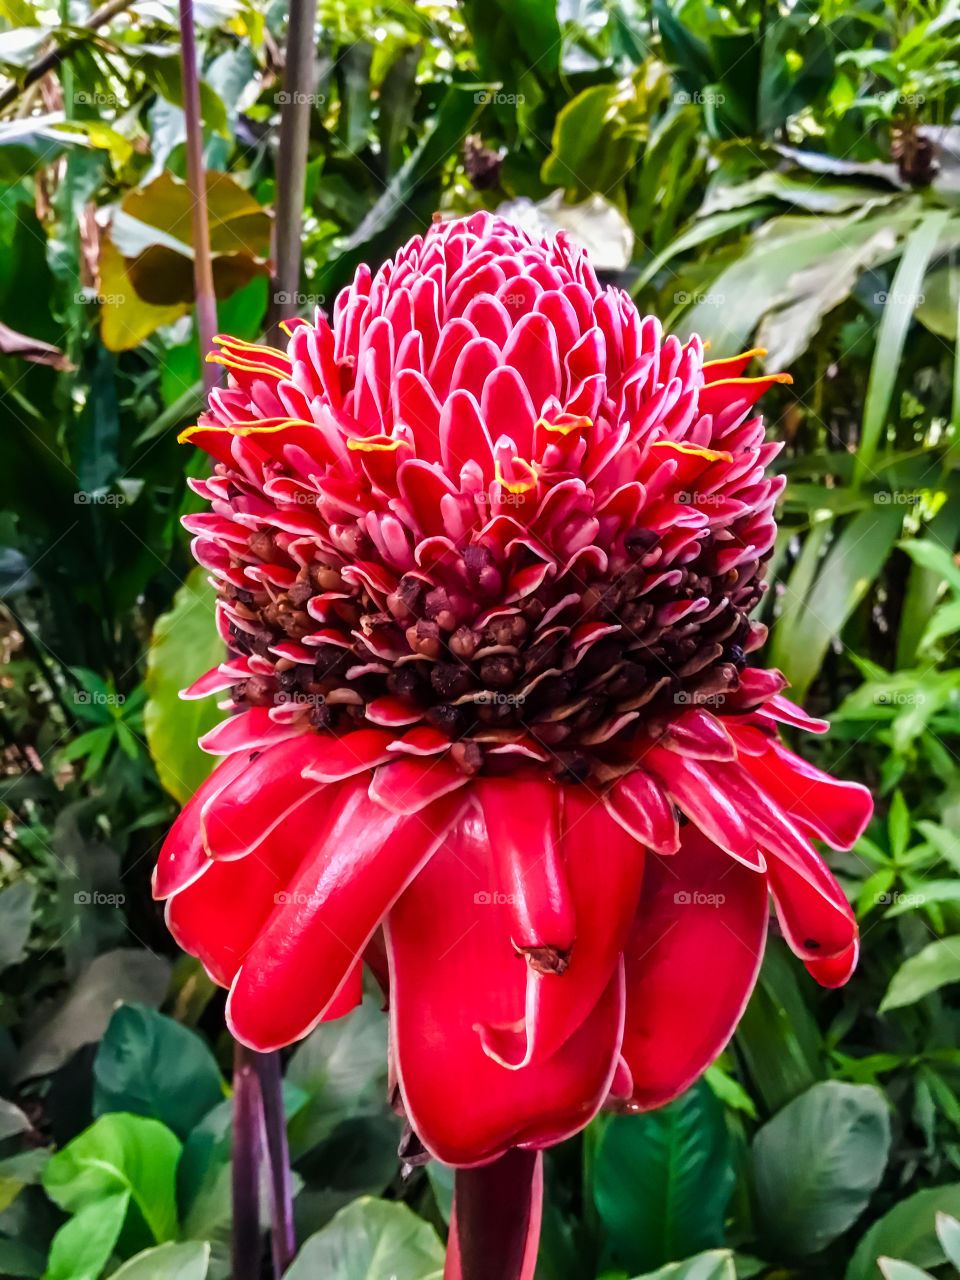 At Hawaii Tropical Botanical Garden